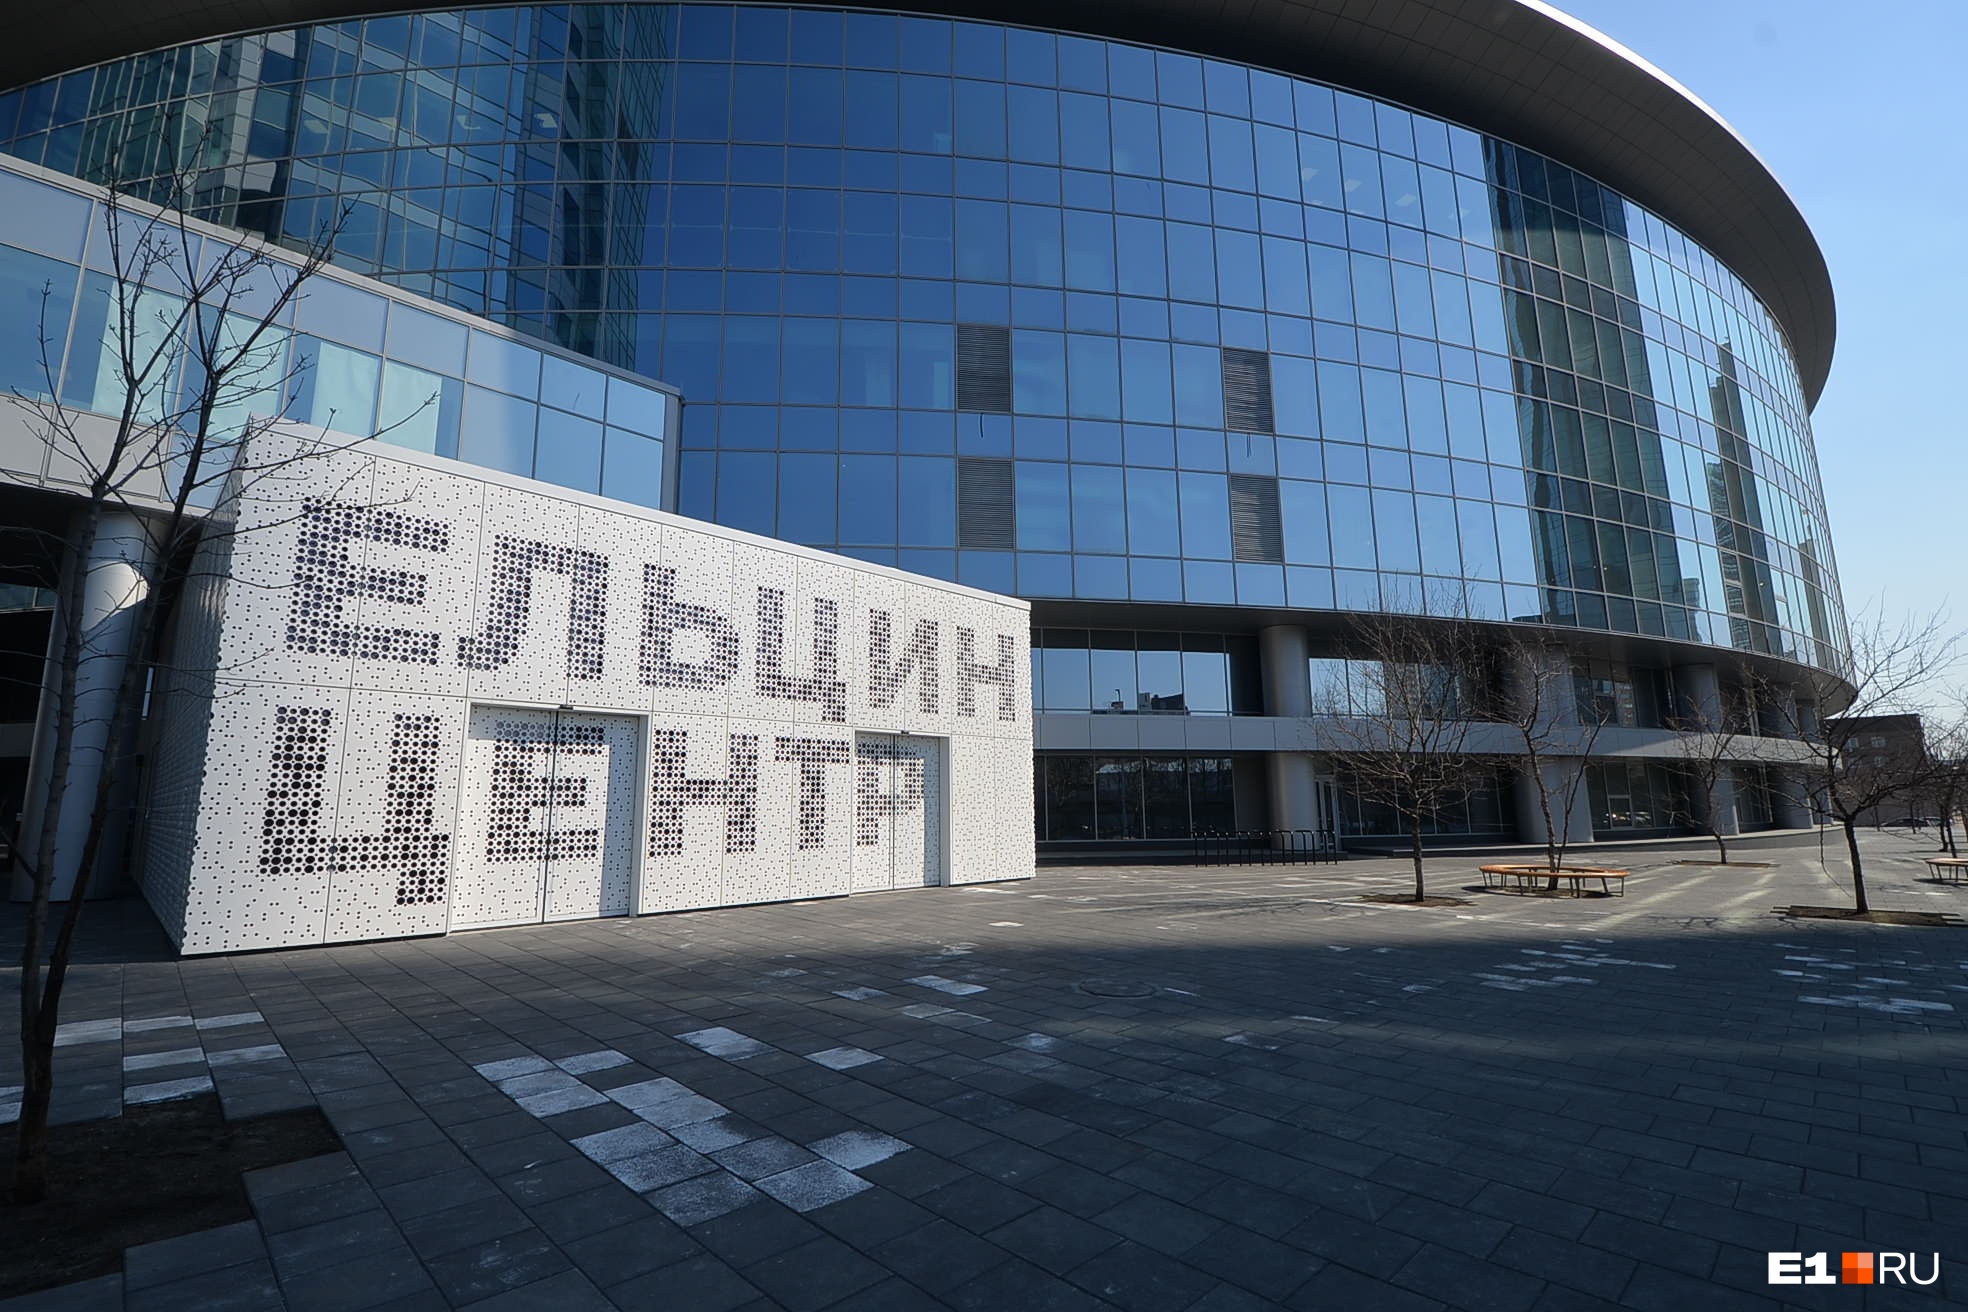 Несколько месяцев Ельцин-центр был закрыт из-за коронавируса